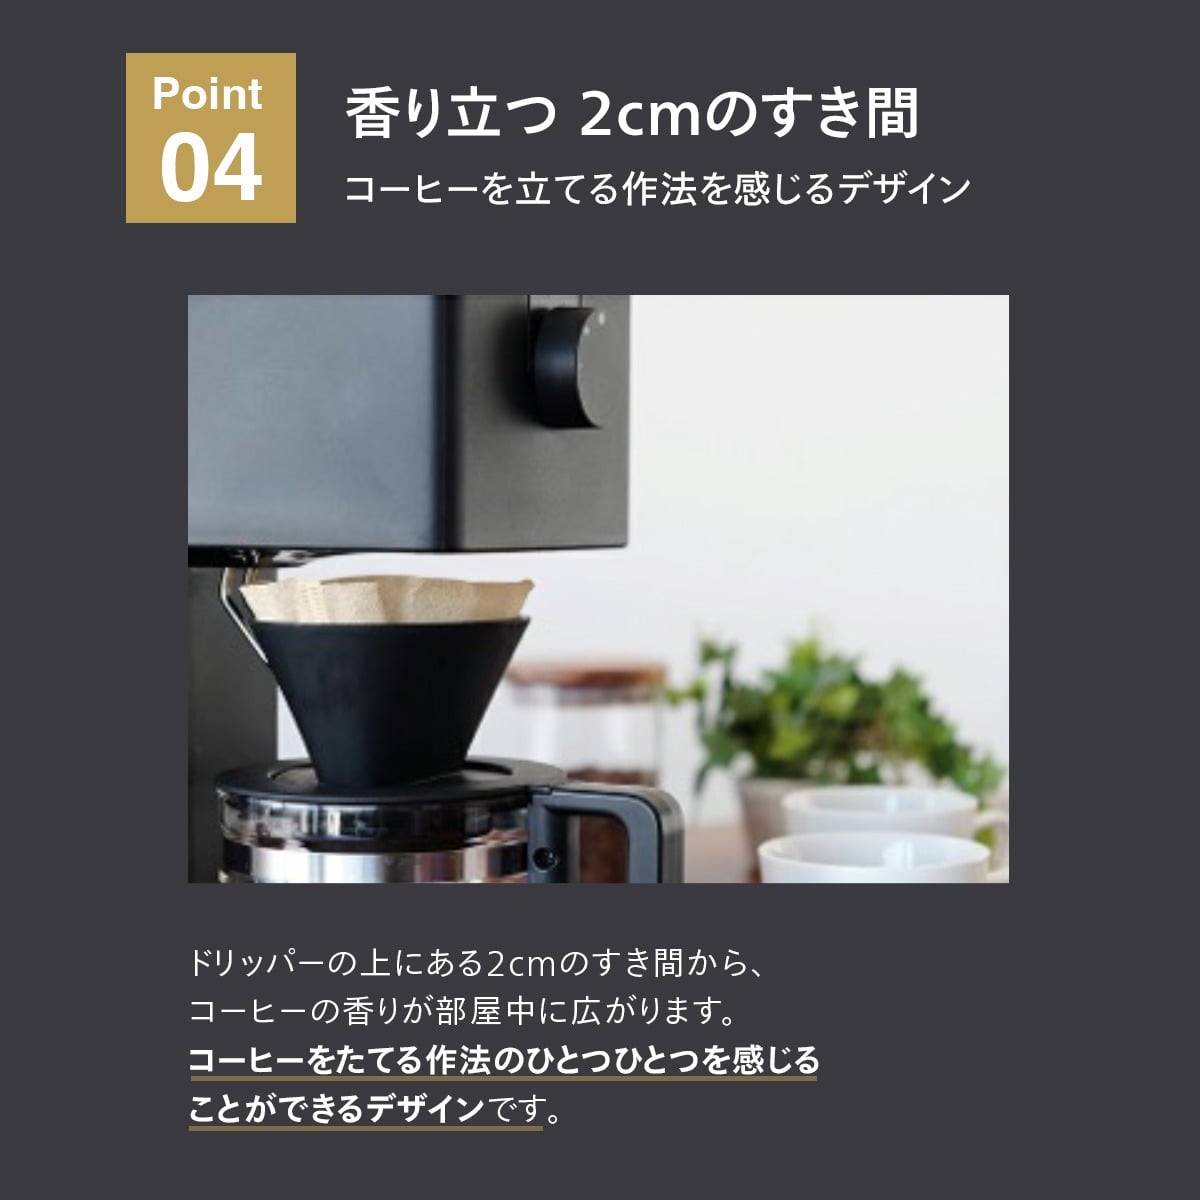 ツインバード CM-D457B 全自動コーヒーメーカー 山崎実業 キッチン ...